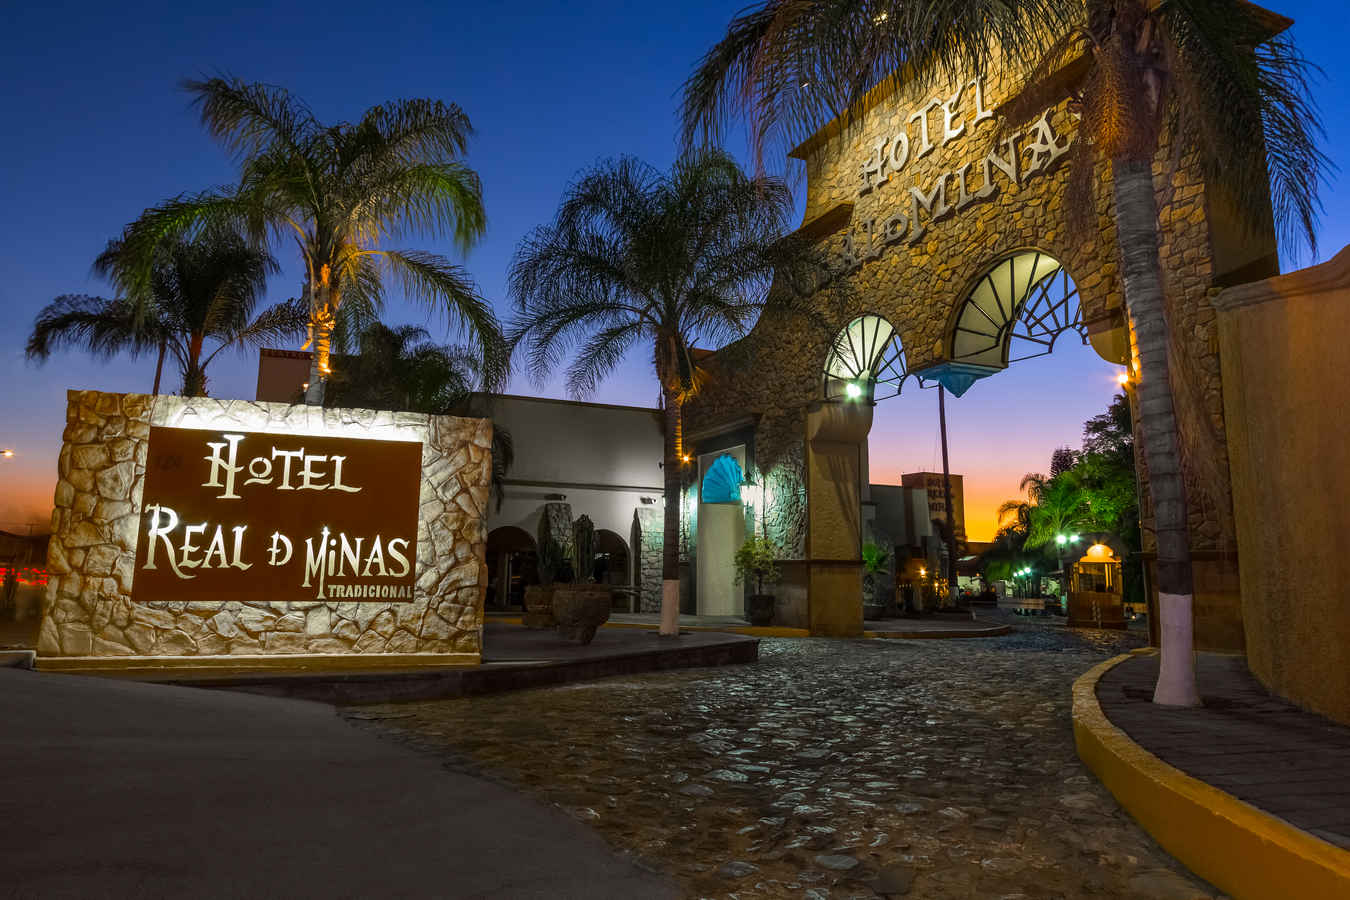 Hotel Real de Minas | Luxury Hotels in Queretaro, Mexico